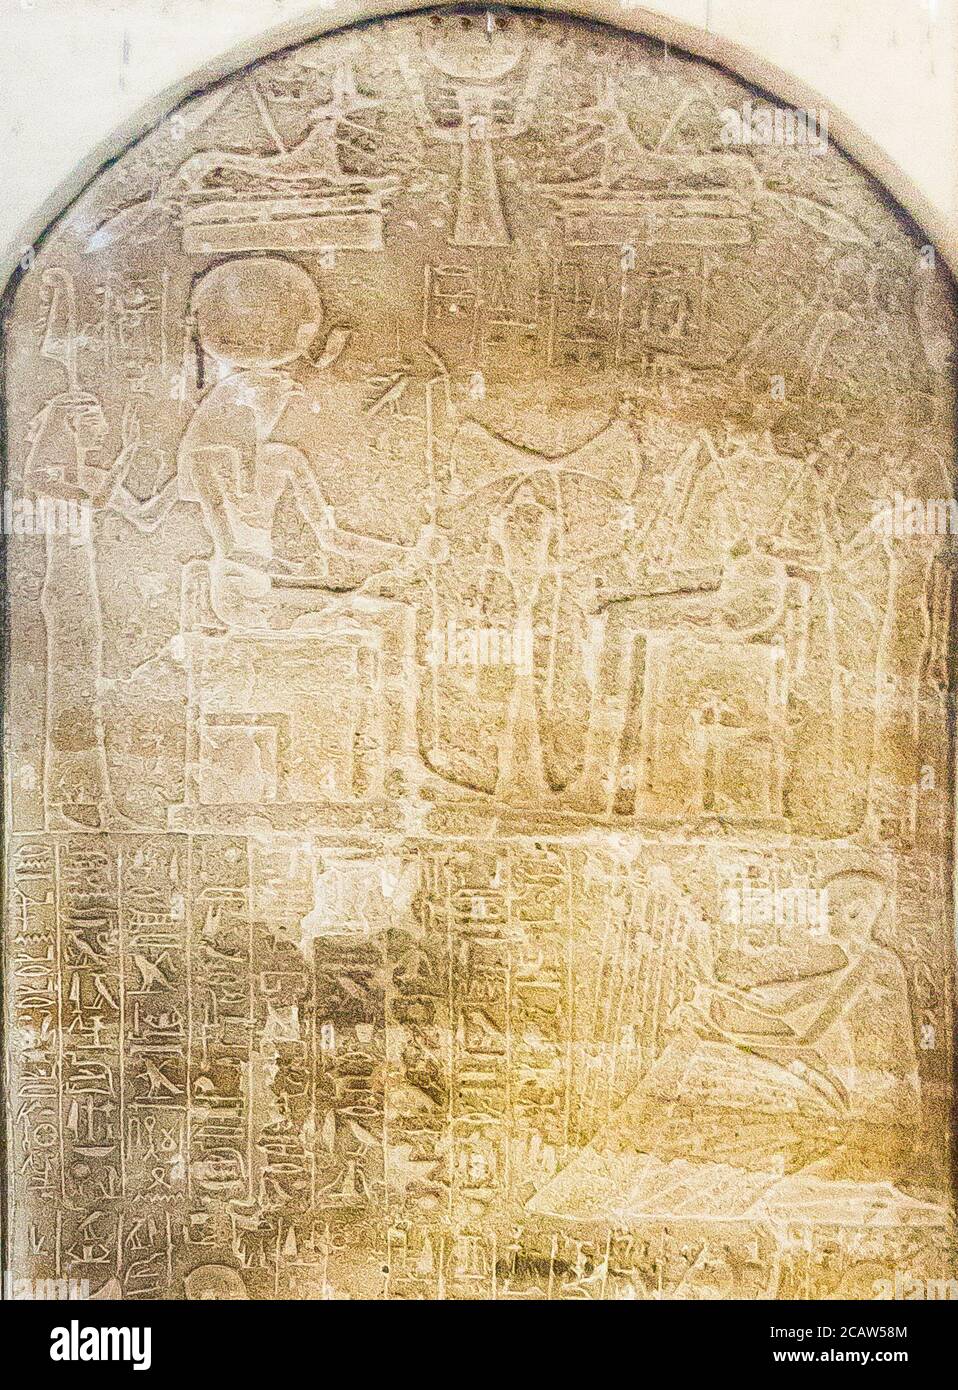 Ägypten, Kairo, Ägyptisches Museum, Stele von Khaemwaset Kaiuia, Dynastie 19, Saqqara. Er wird als Harfenist dargestellt. Stockfoto